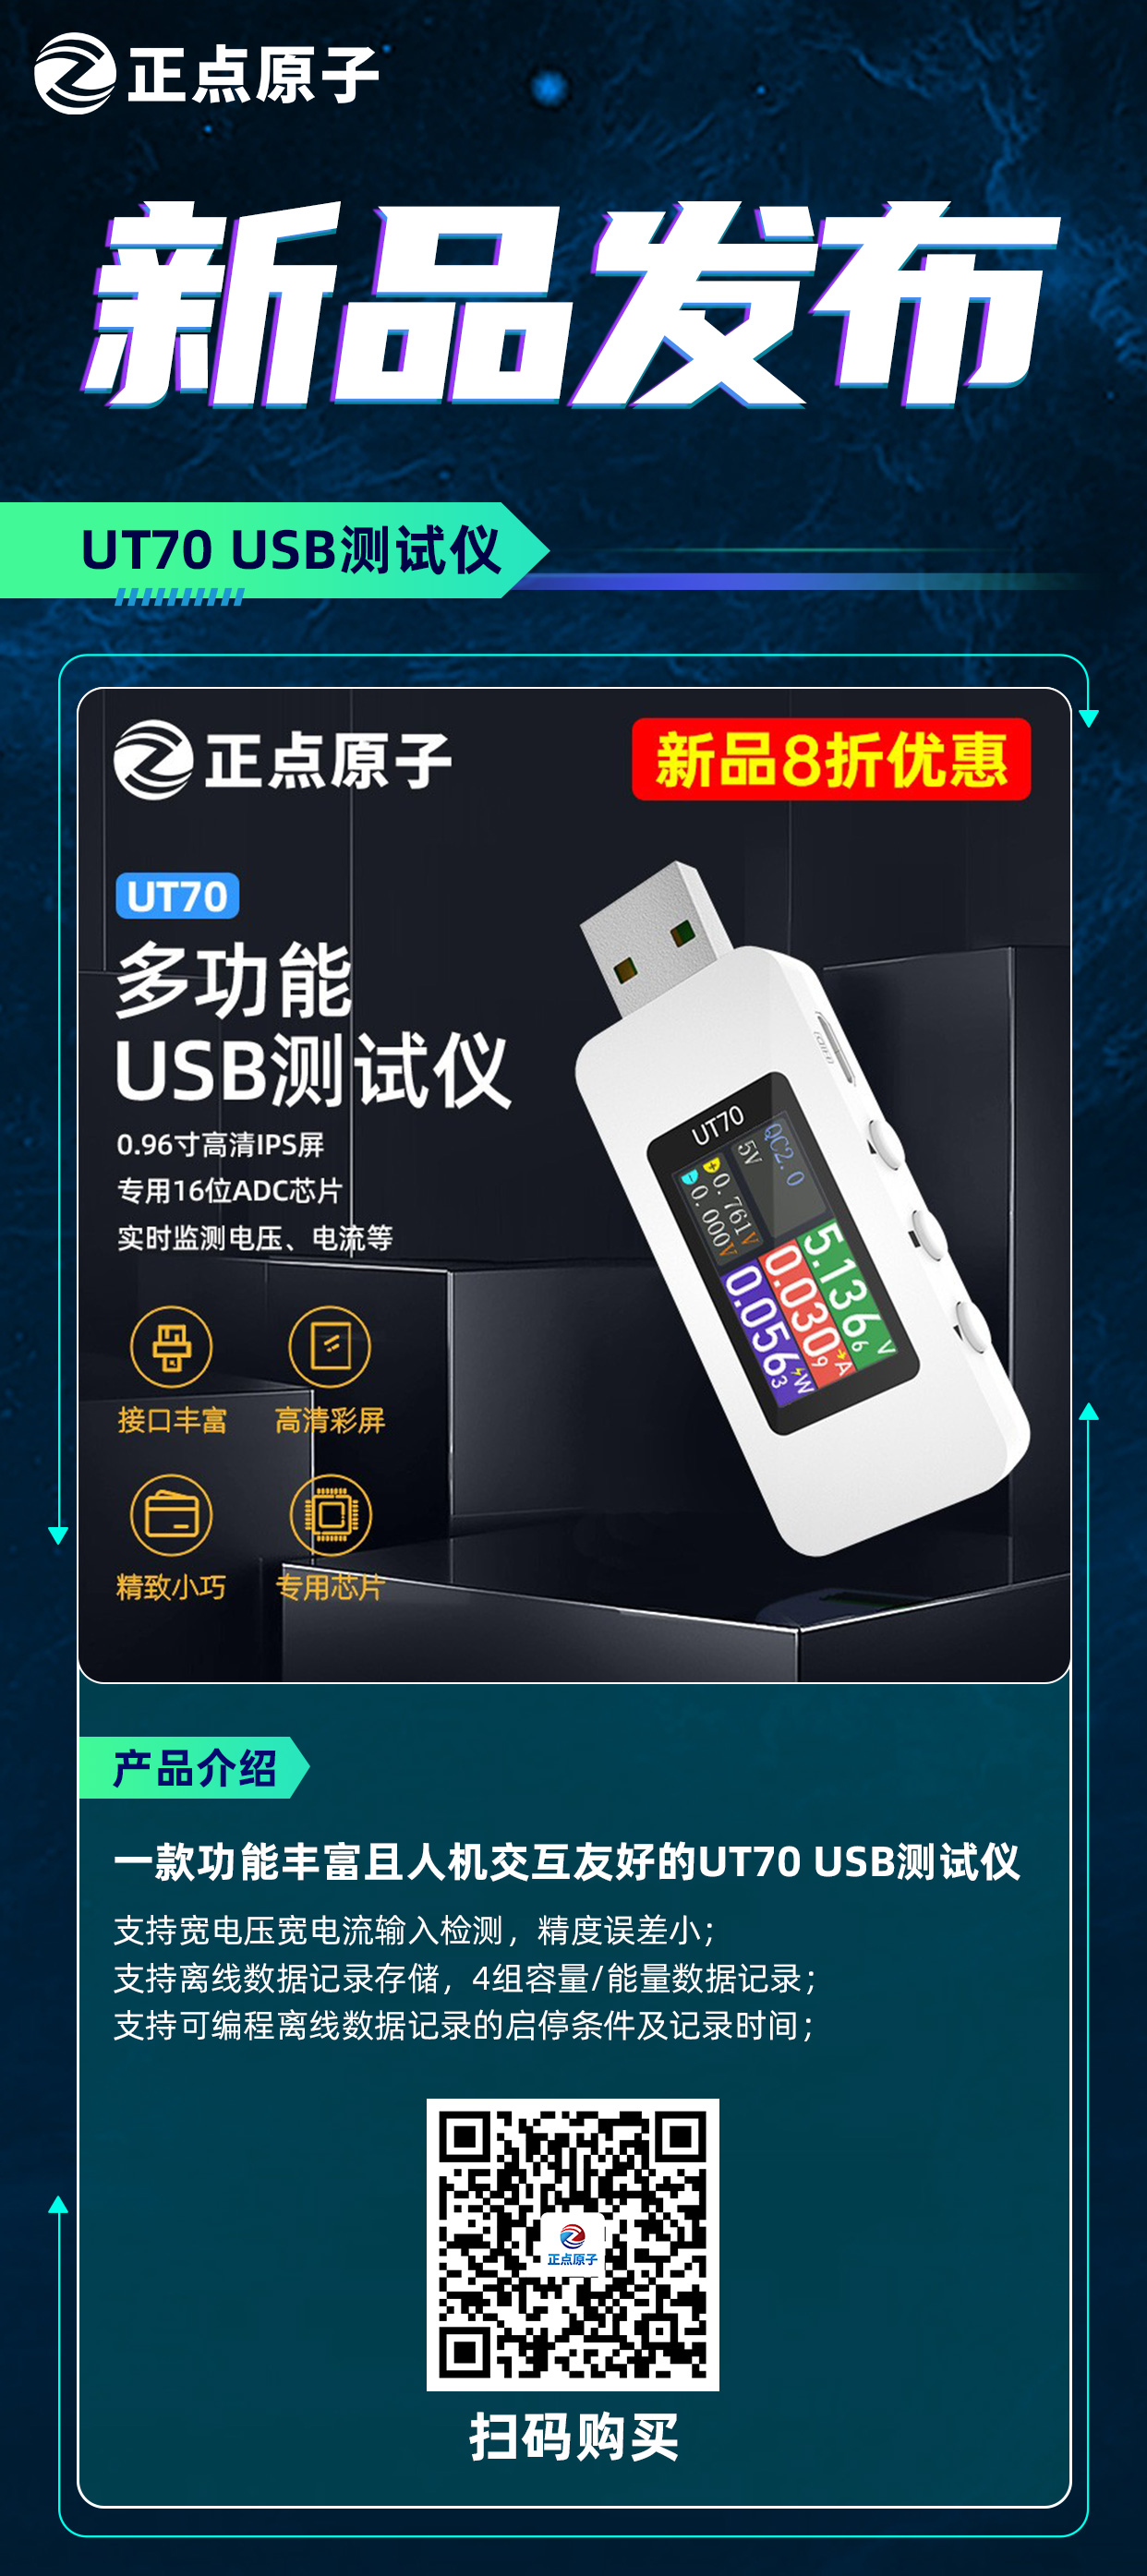 USB测试仪-新品朋友圈宣传图.jpg